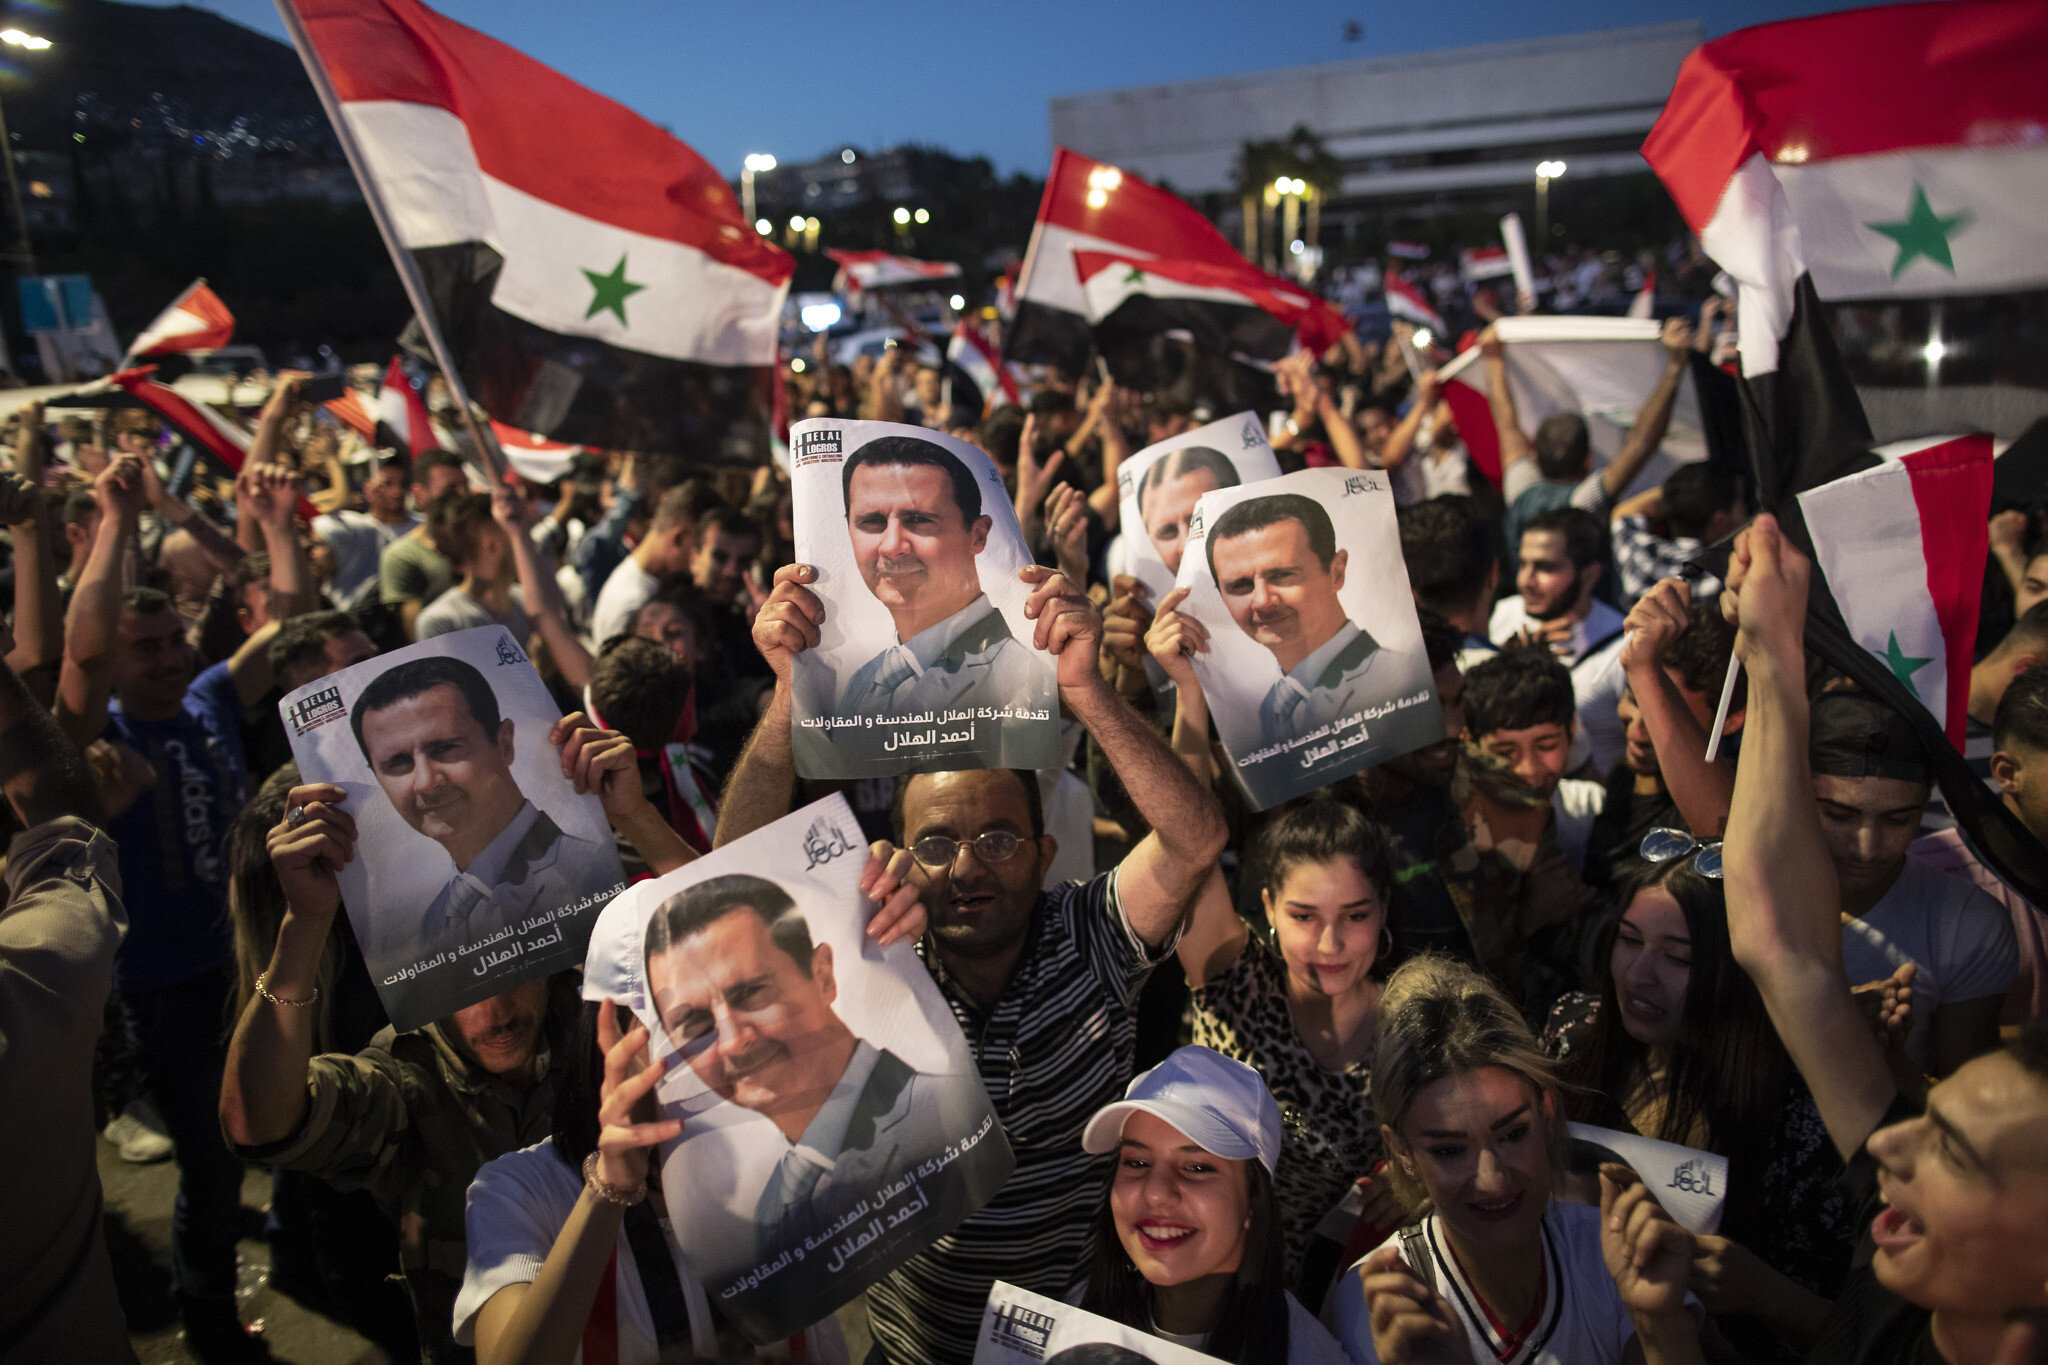 Syrians have rejected regime change, reelected Assad